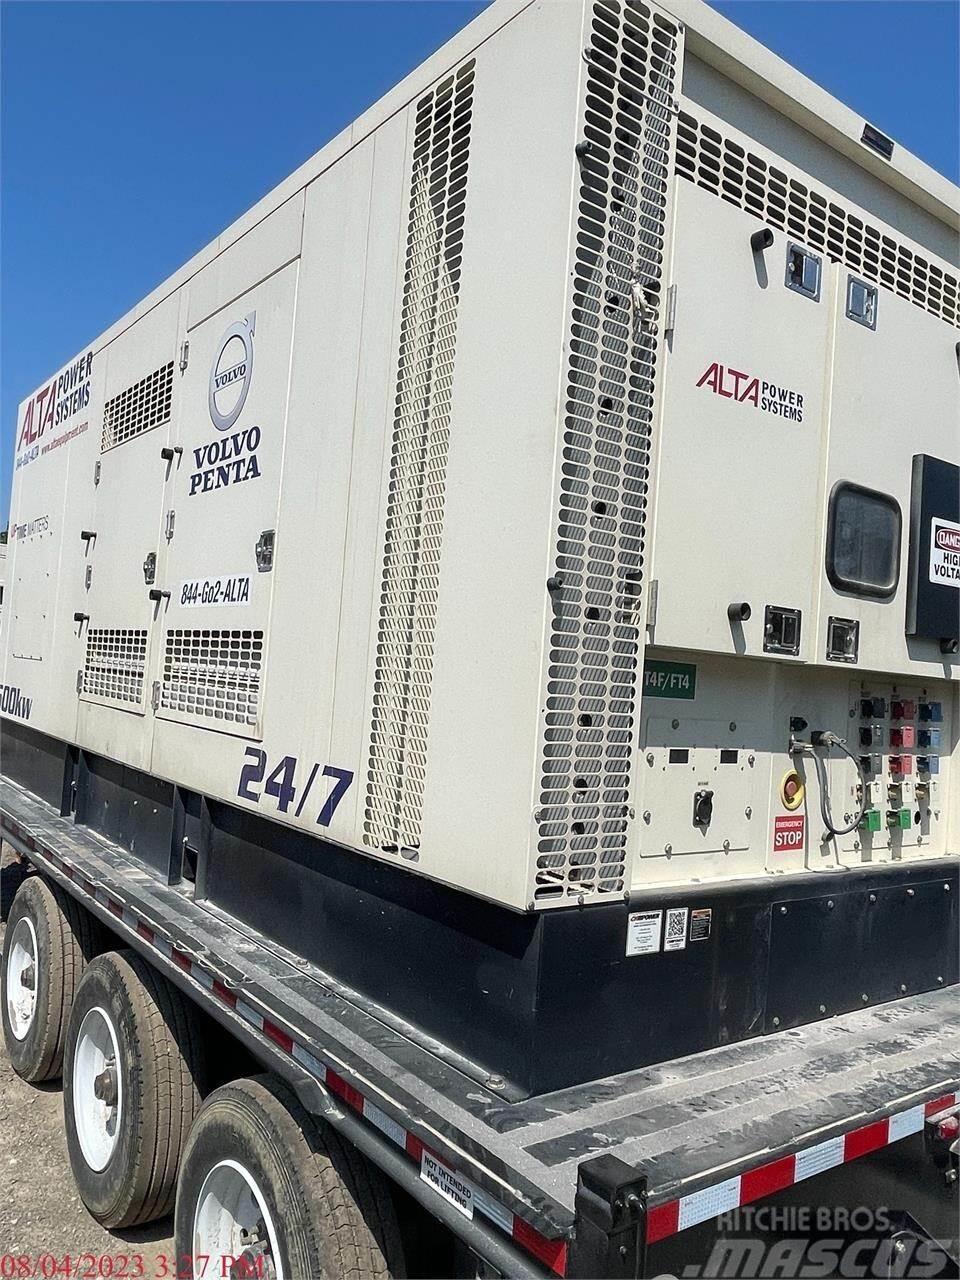  CK POWER 550 KW Övriga generatorer